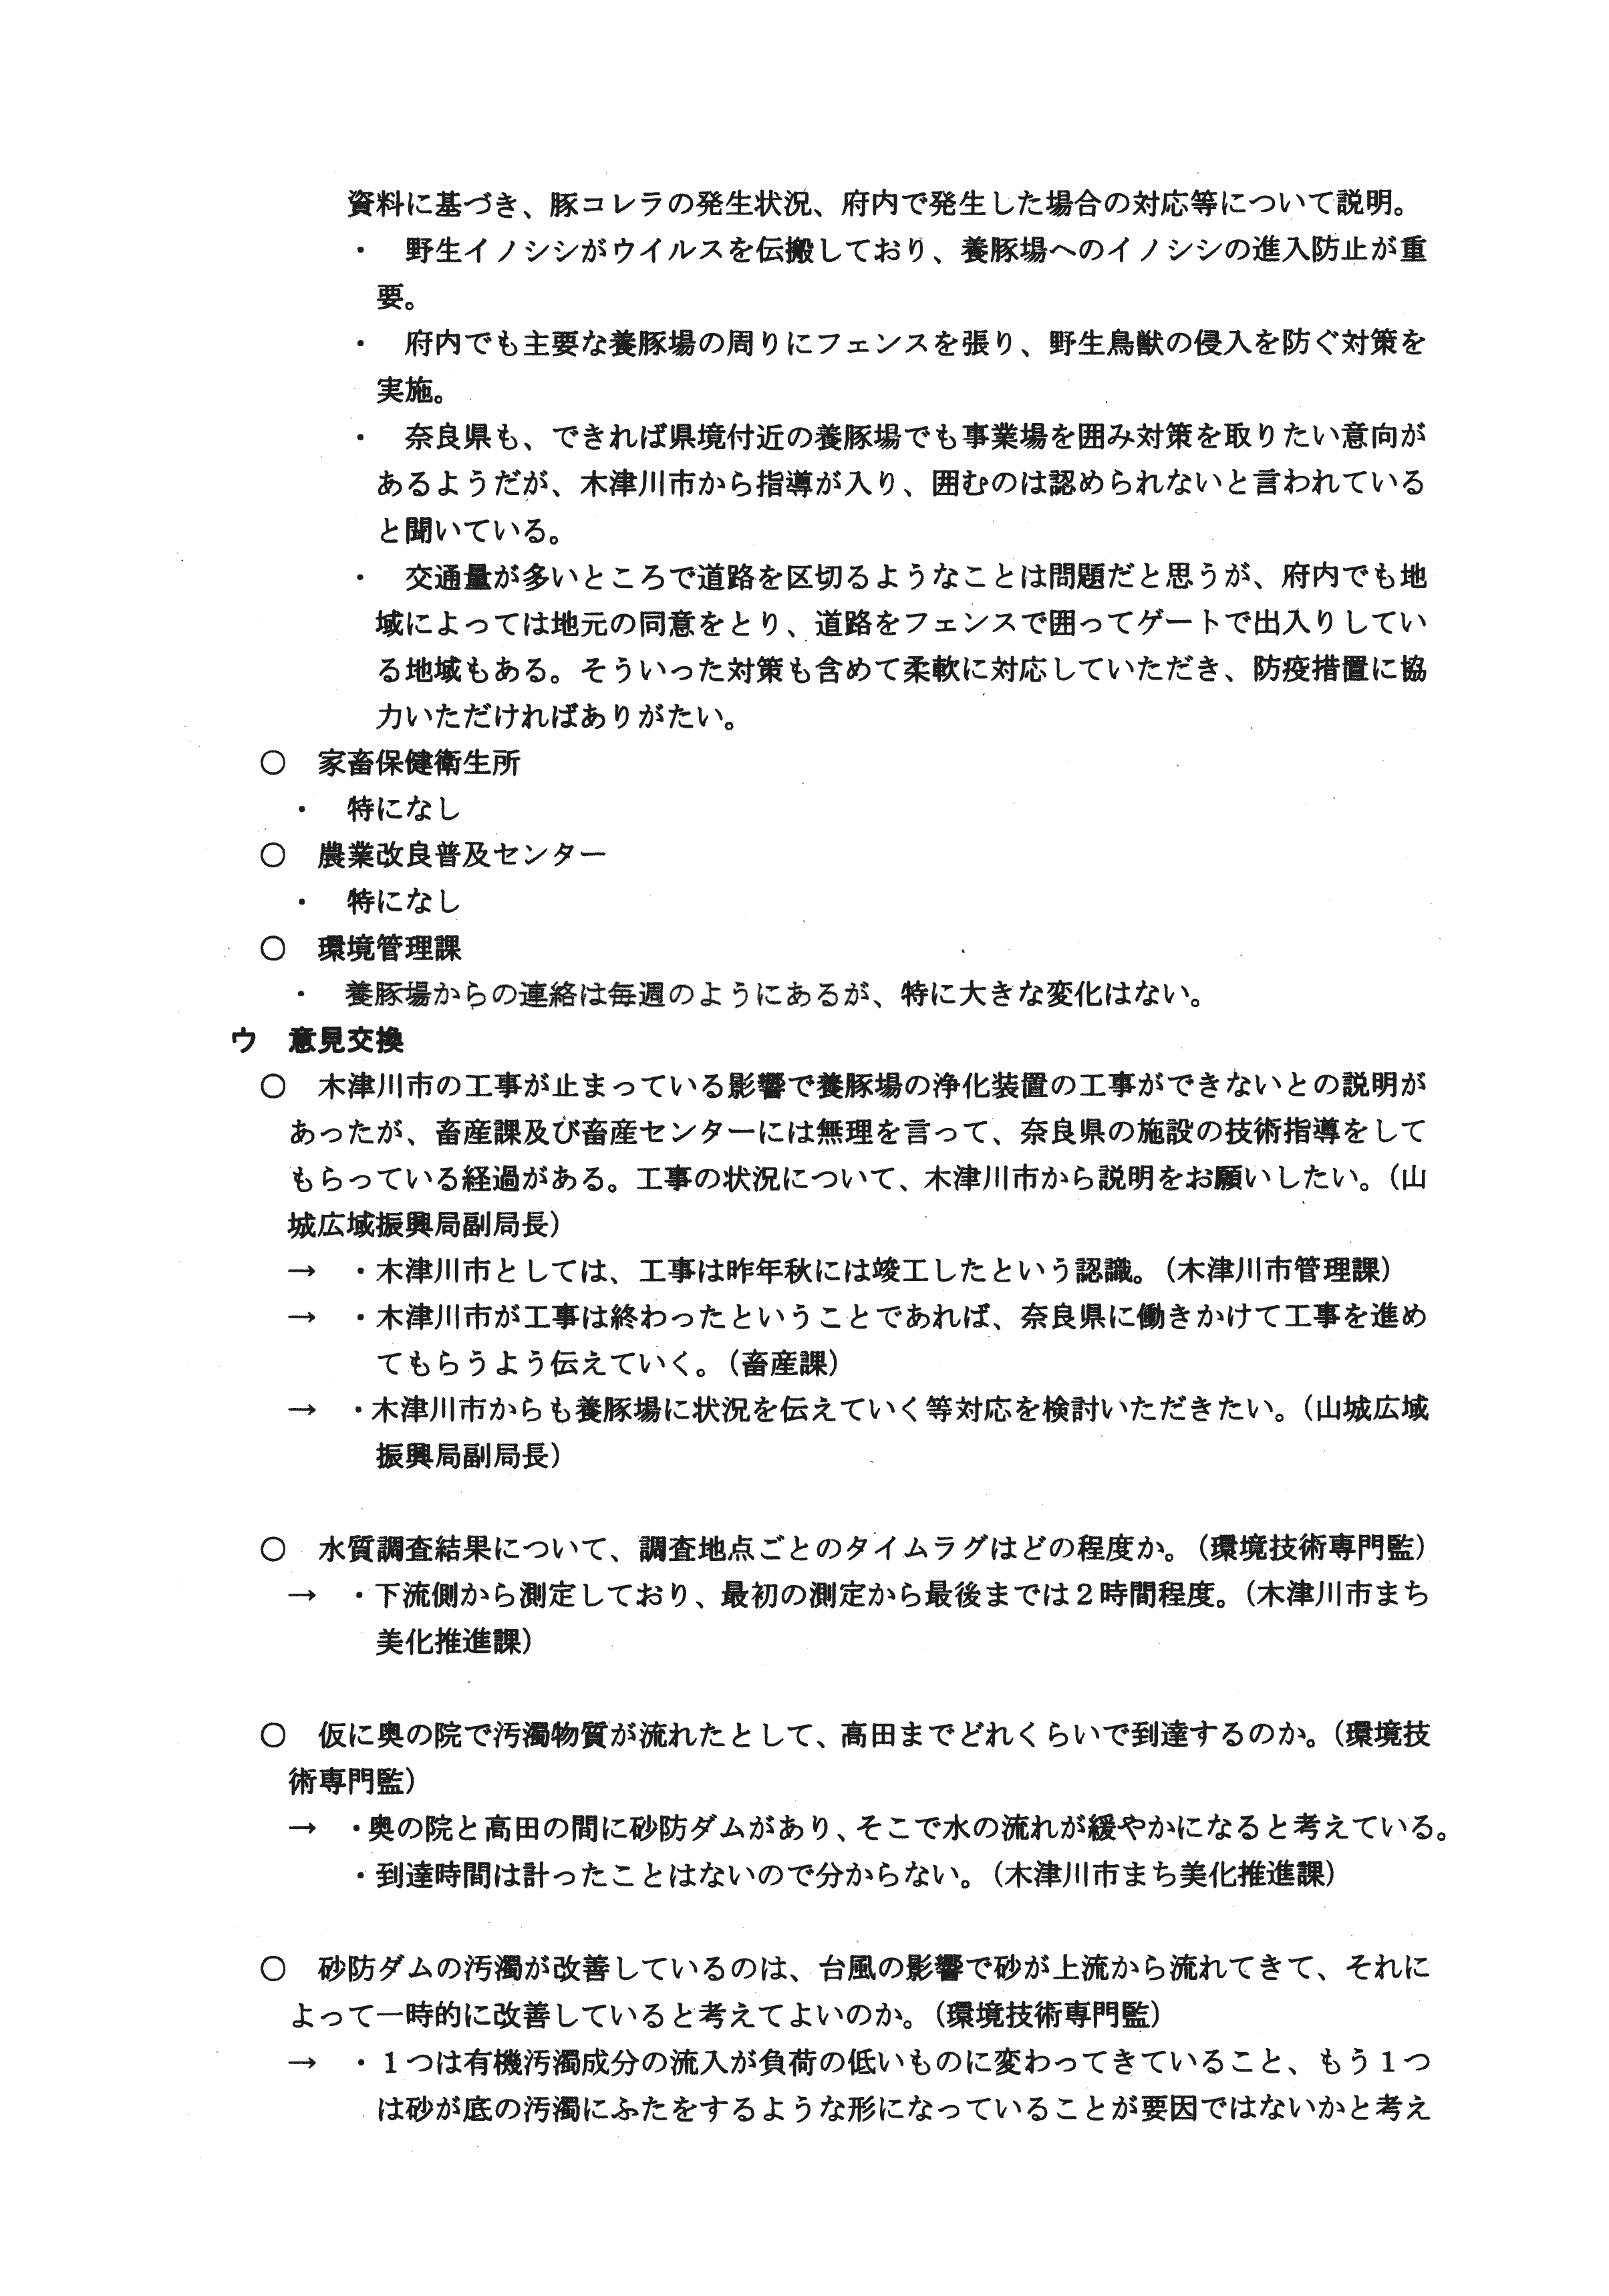 平成31年3月19日-赤田川の水質汚濁に係る連絡調整会議について-03-mix